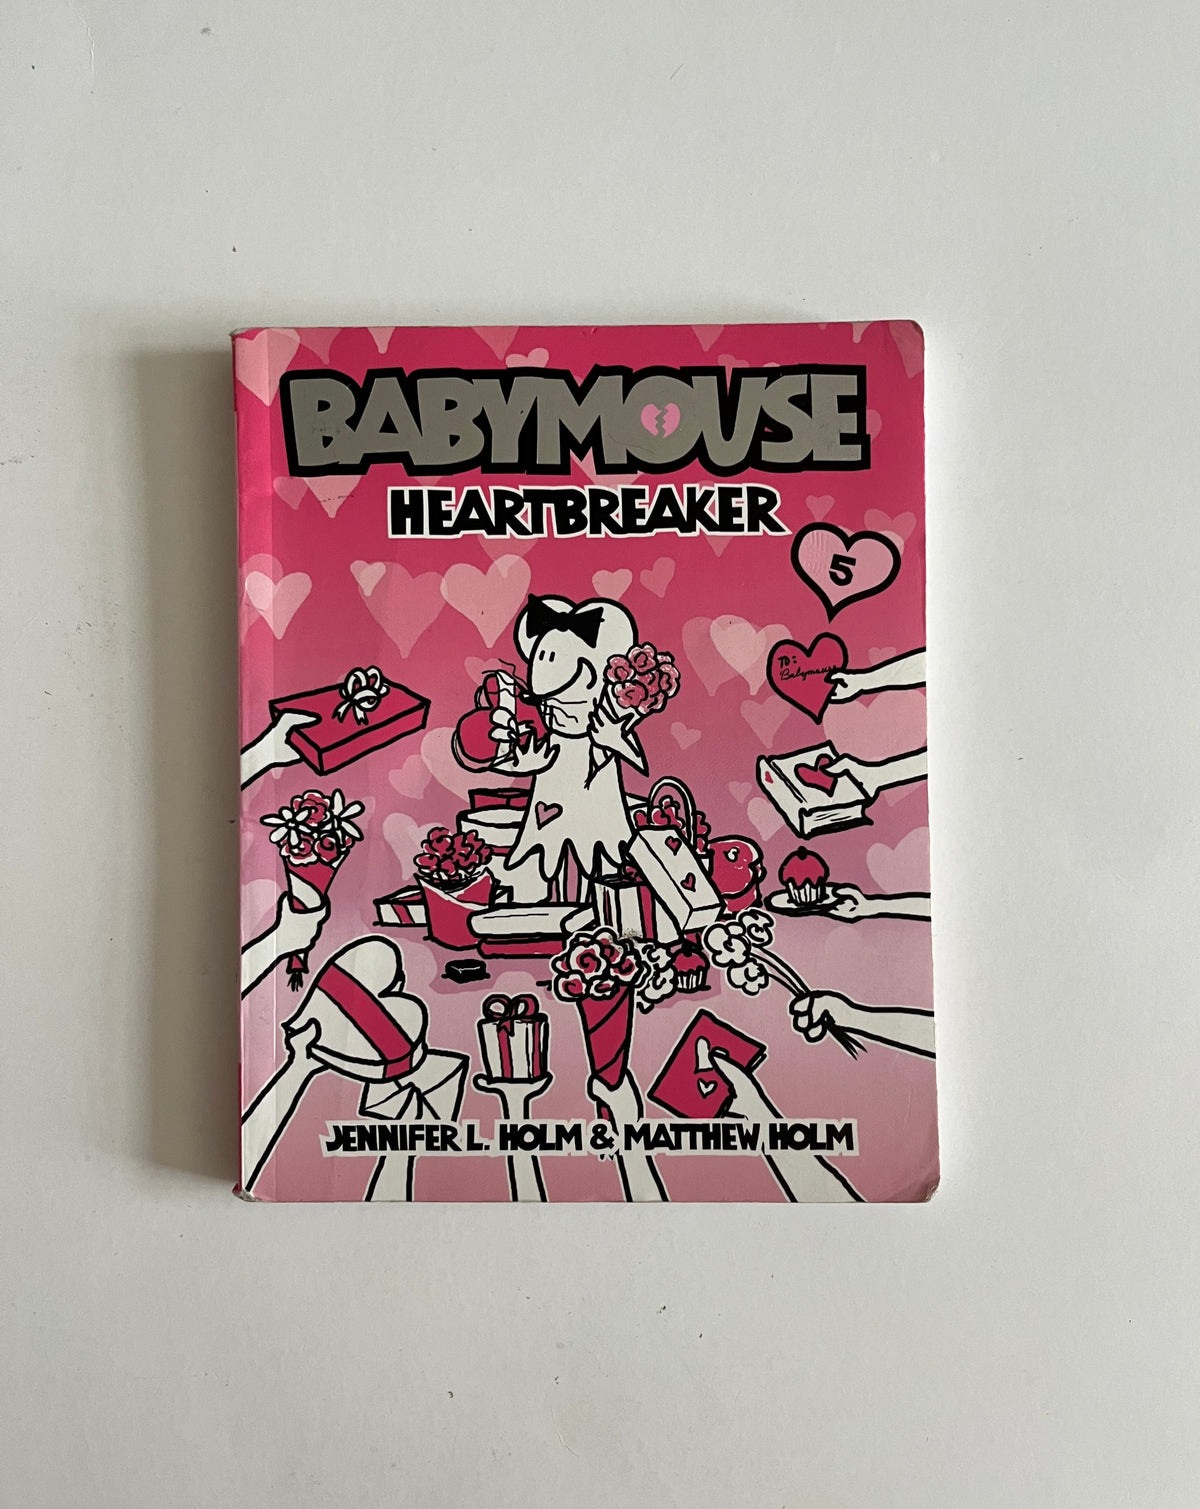 Babymouse: Heartbreaker by Jennifer L. Holm &amp; Matthew Holm